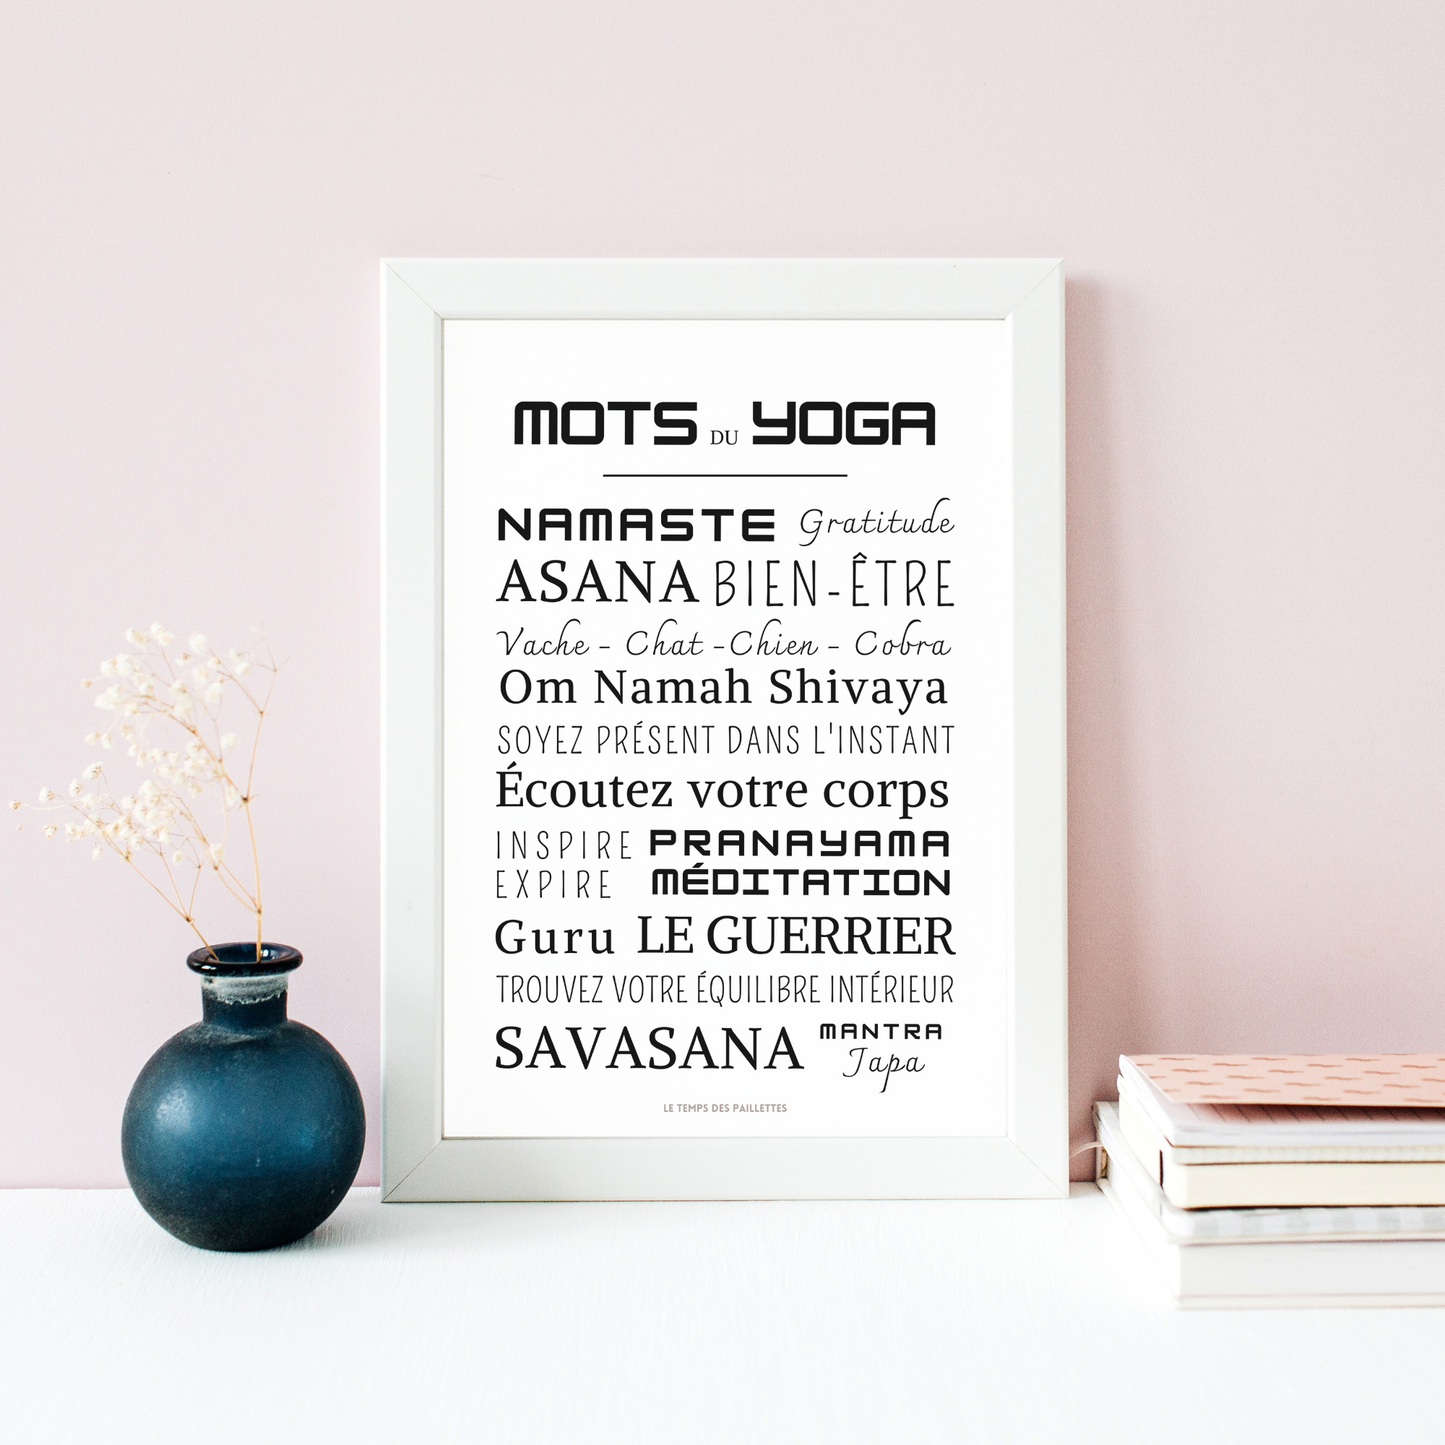 Affiche yoga - Affiche mots et expressions de yoga- Poster namaste par Le Temps des Paillettes